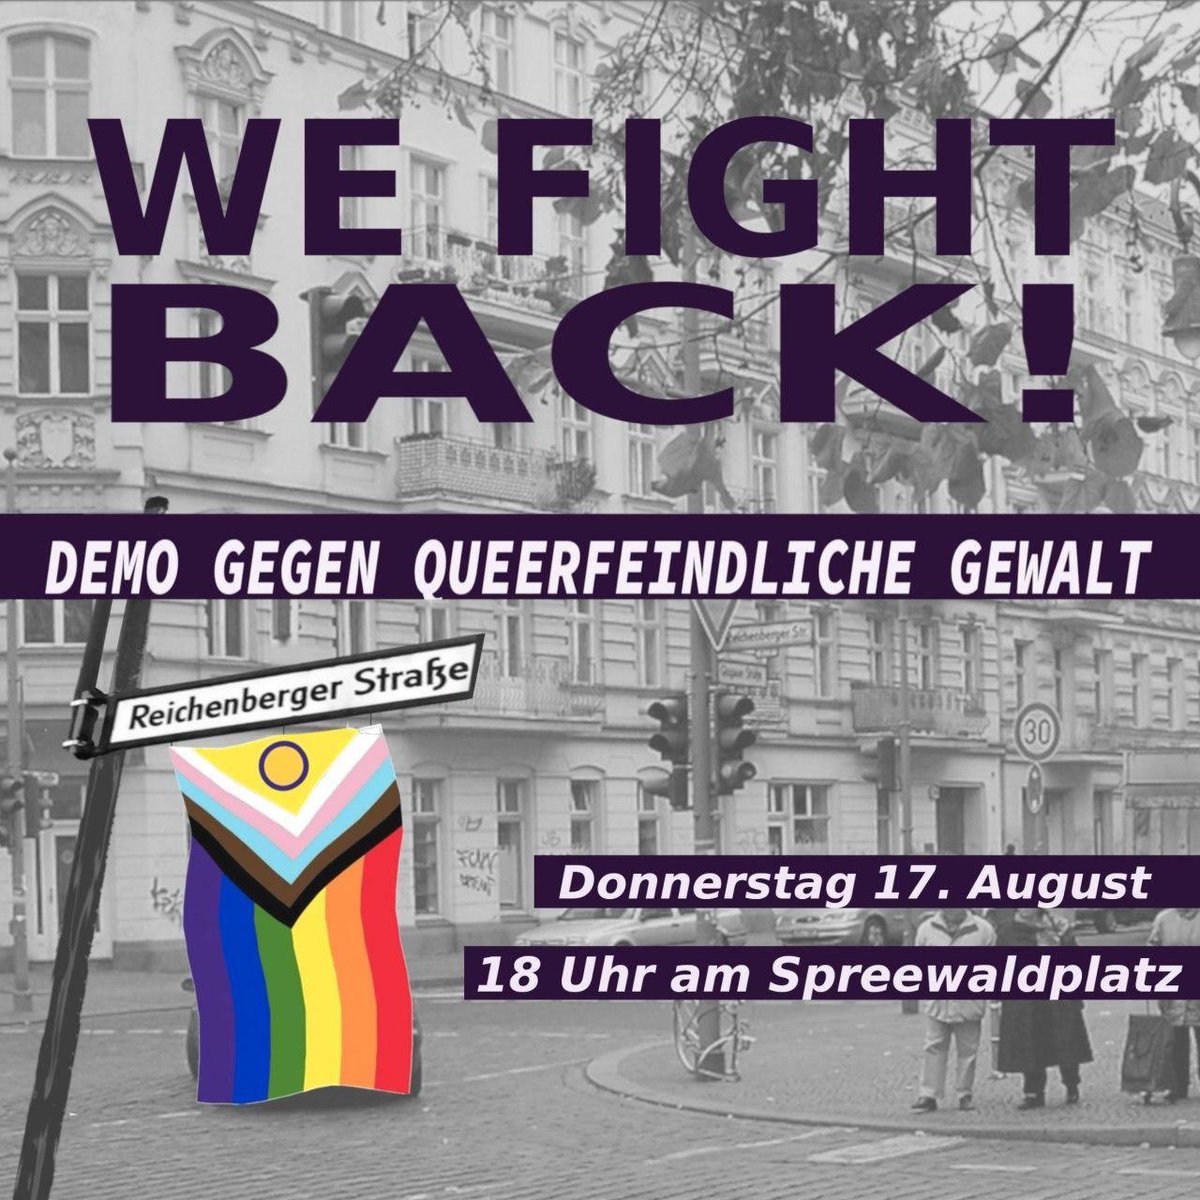 Wir teilen hier den Aufruf zu einer Demo, der uns erreicht hat: Kommt am 17.8. mit uns auf die Straße, um kämpferisch gegen Queerfeindlichkeit einzustehen. Wir lassen uns nicht einschüchtern! Das ist unser Kiez! 👊 17. August | 18 Uhr 📍Spreewaldplatz #kreuzberg #b1708